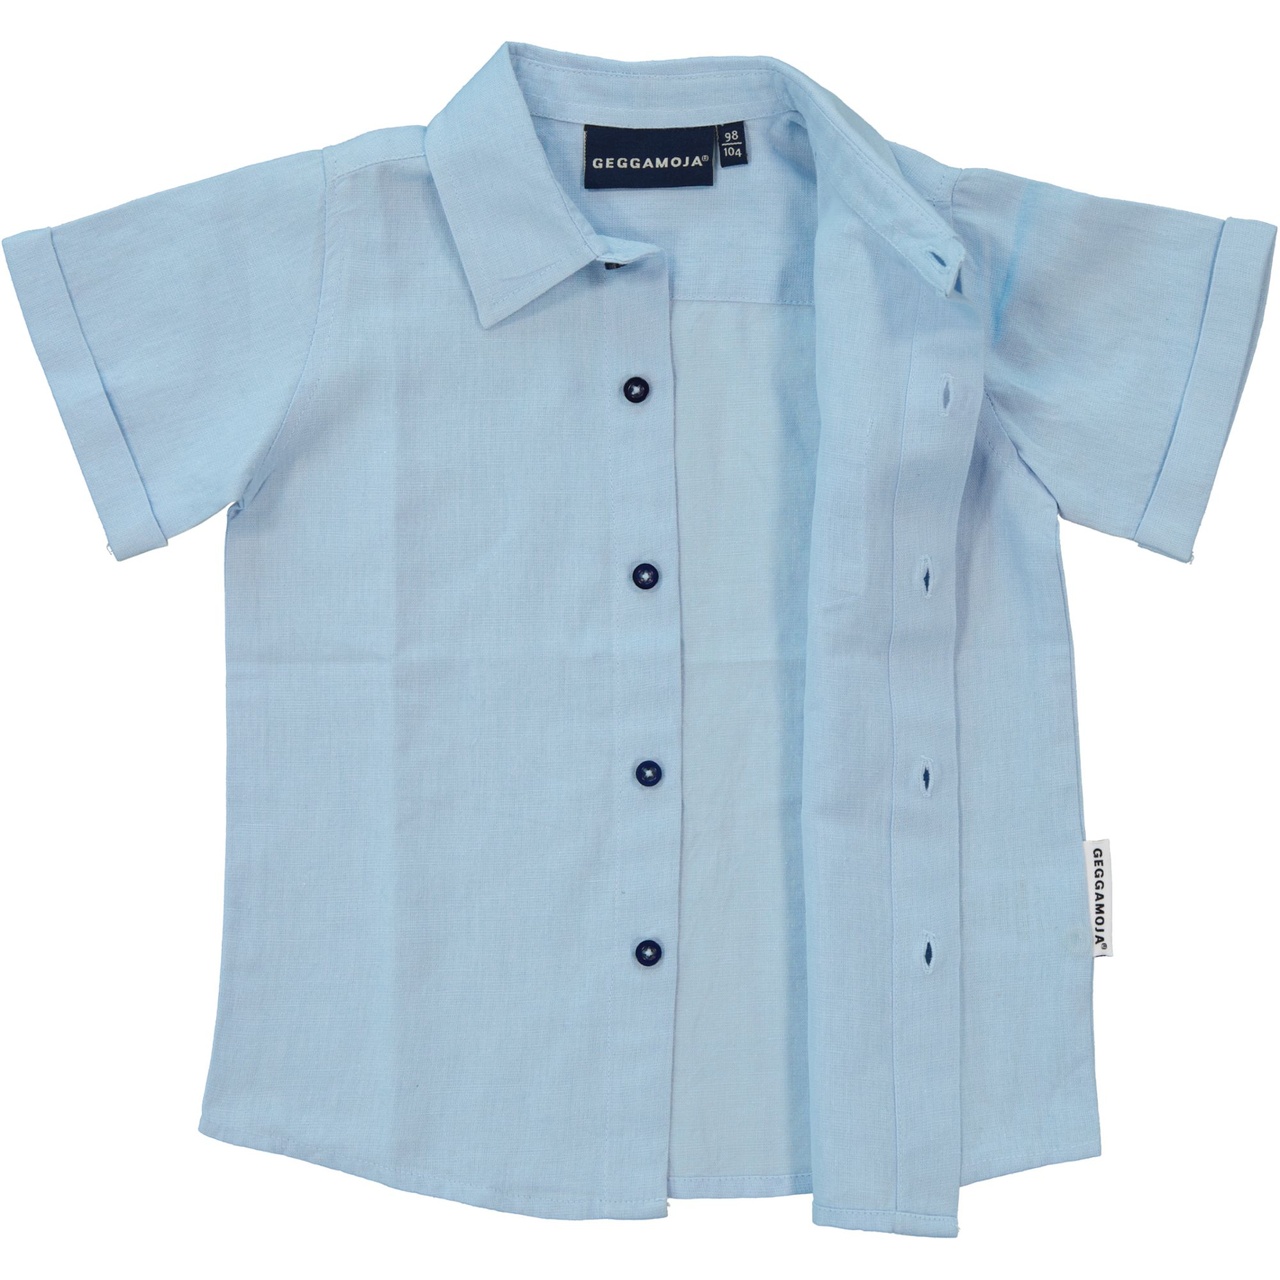 Linnen Shirt S.S Light blue 98/104